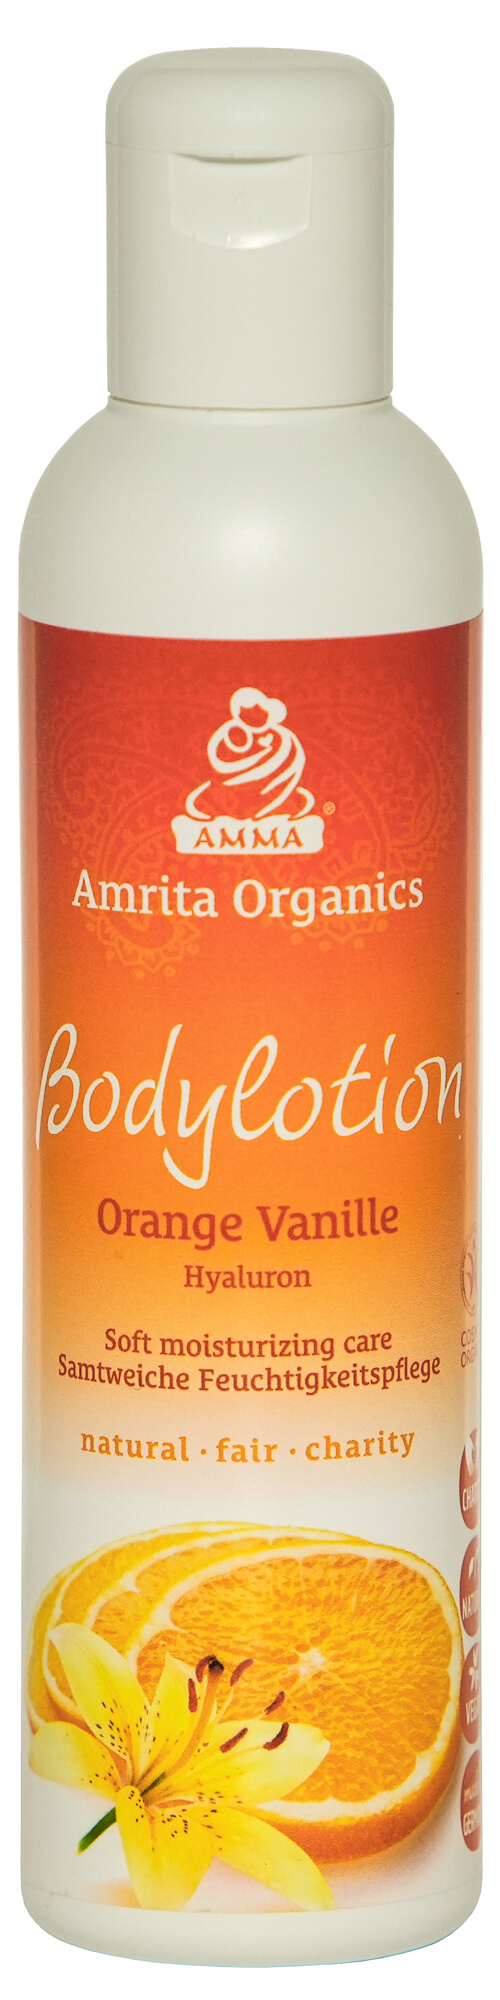 Bodylotion Orange-Vanille mit Hyaluron